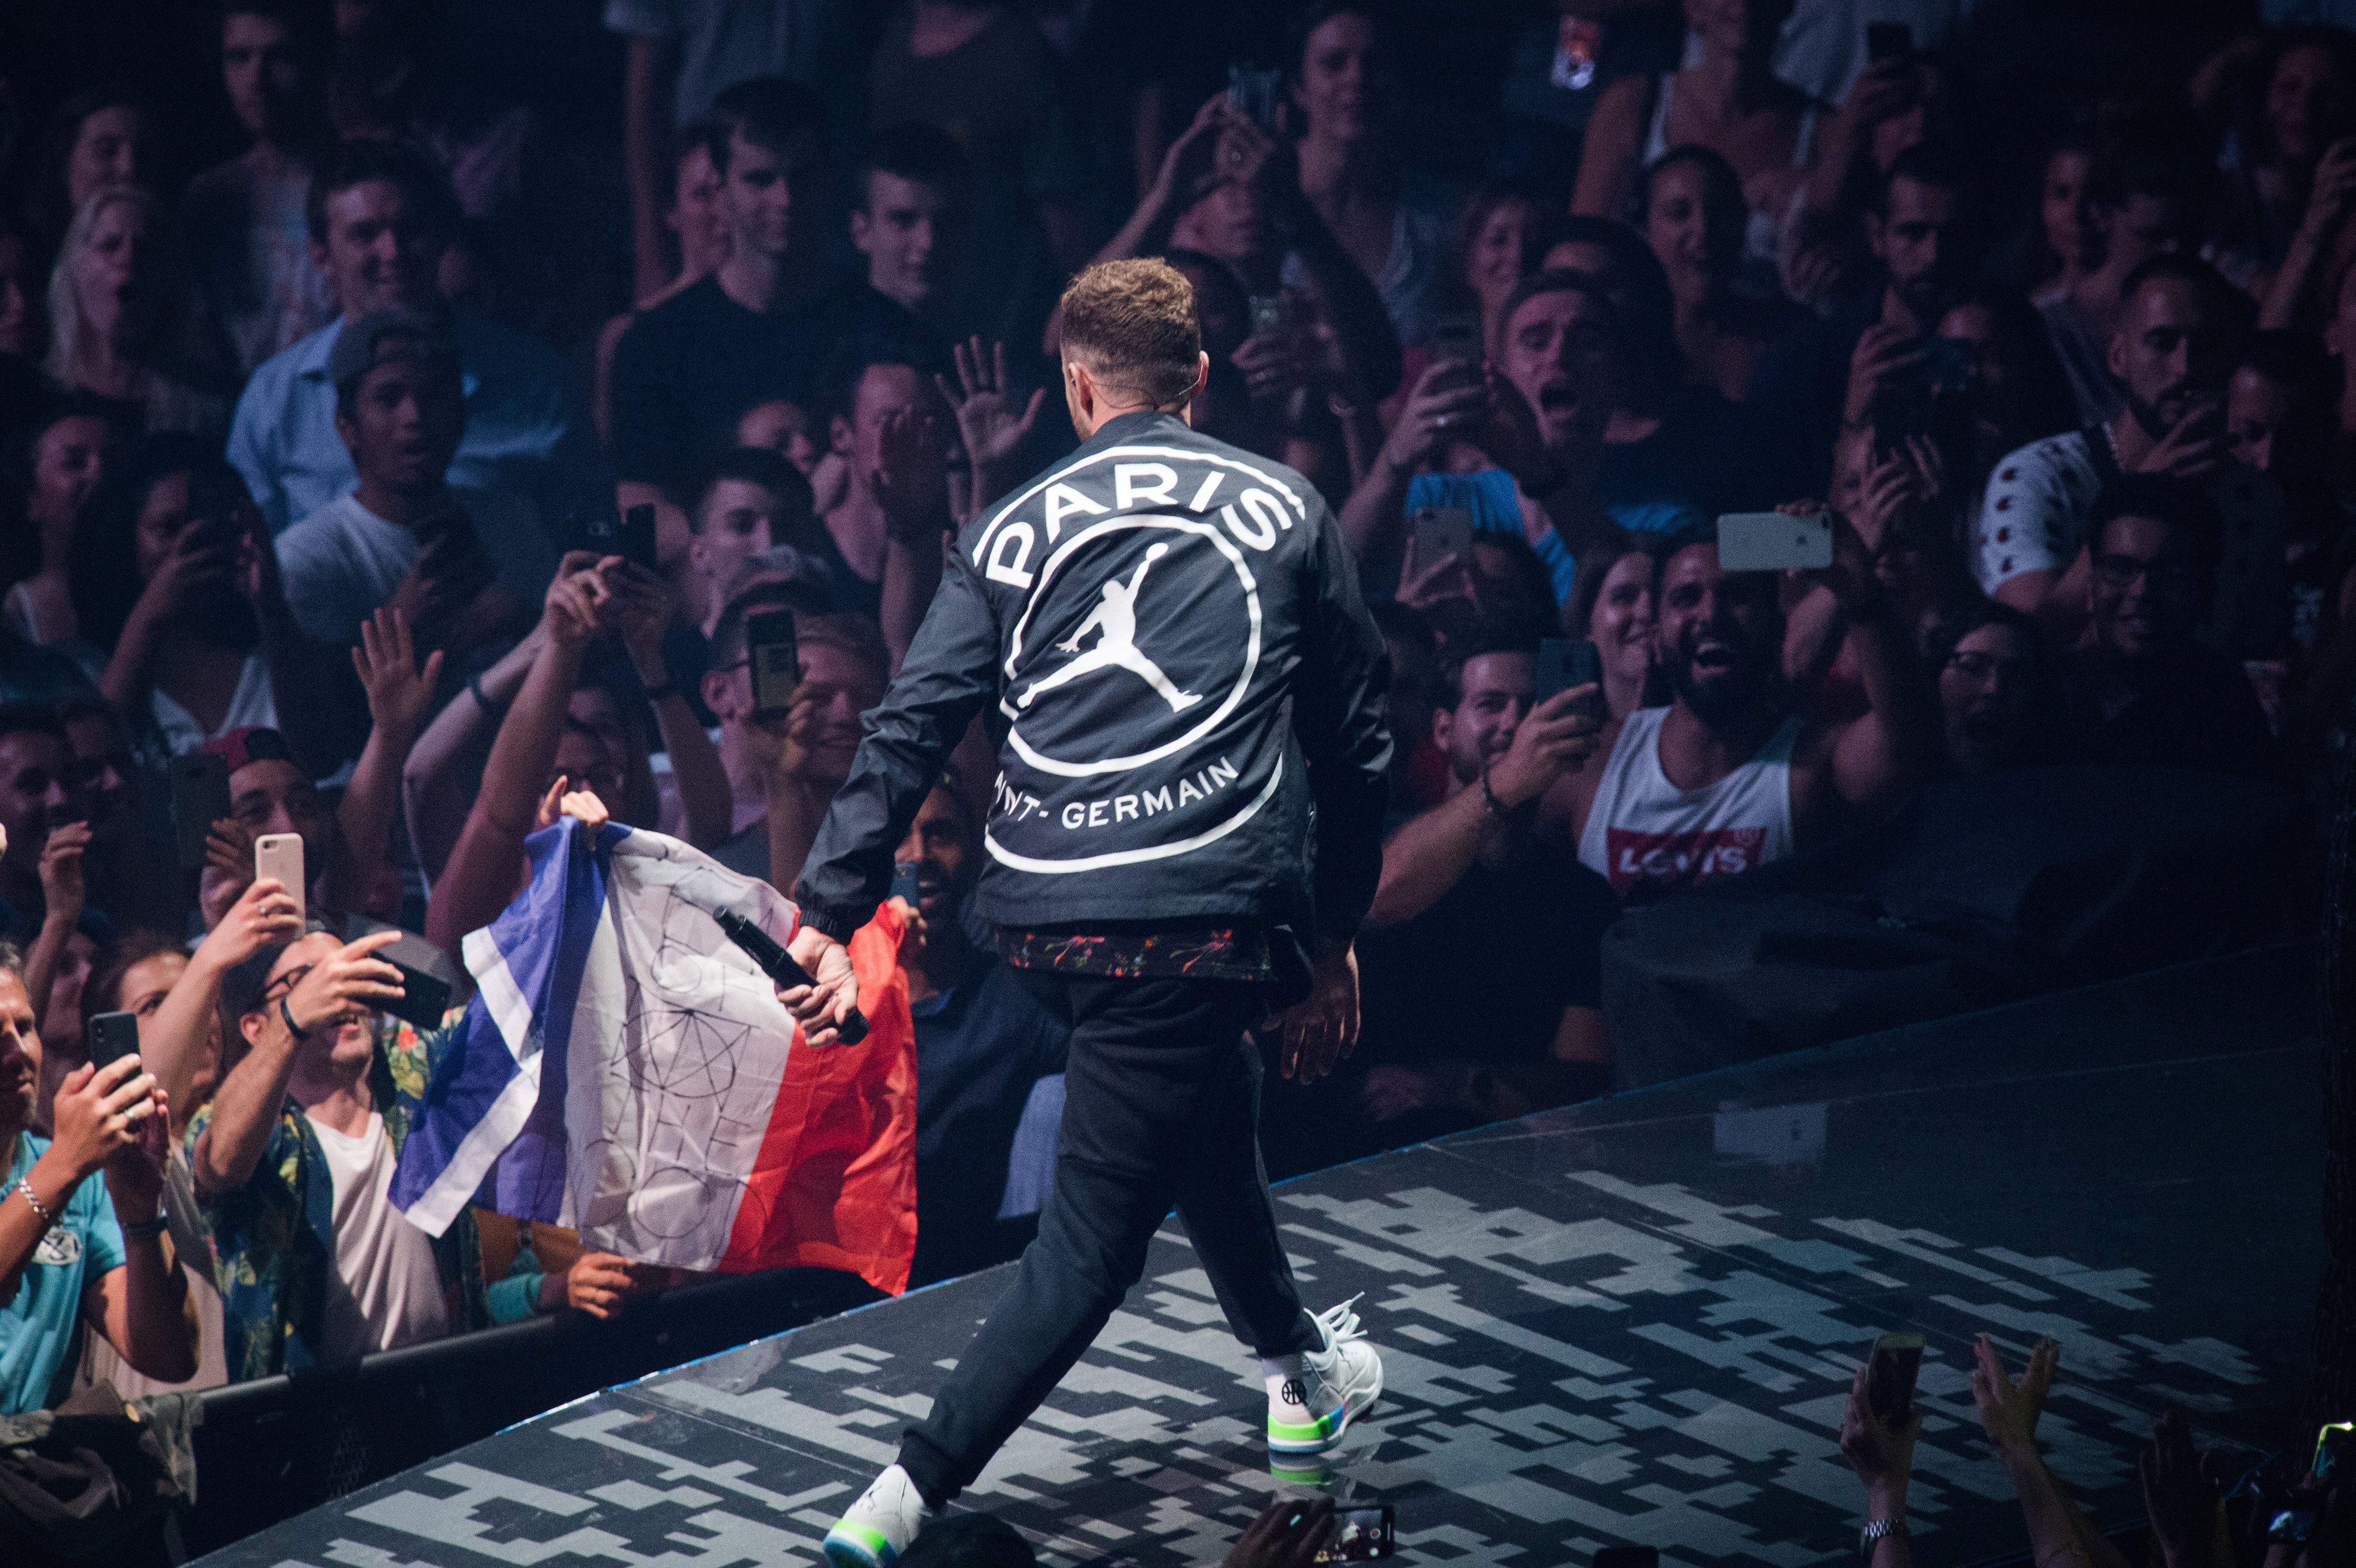 PSG x Air Jordan : Justin Timberlake dévoile une veste de la nouvelle  collaboration attendue | Le HuffPost